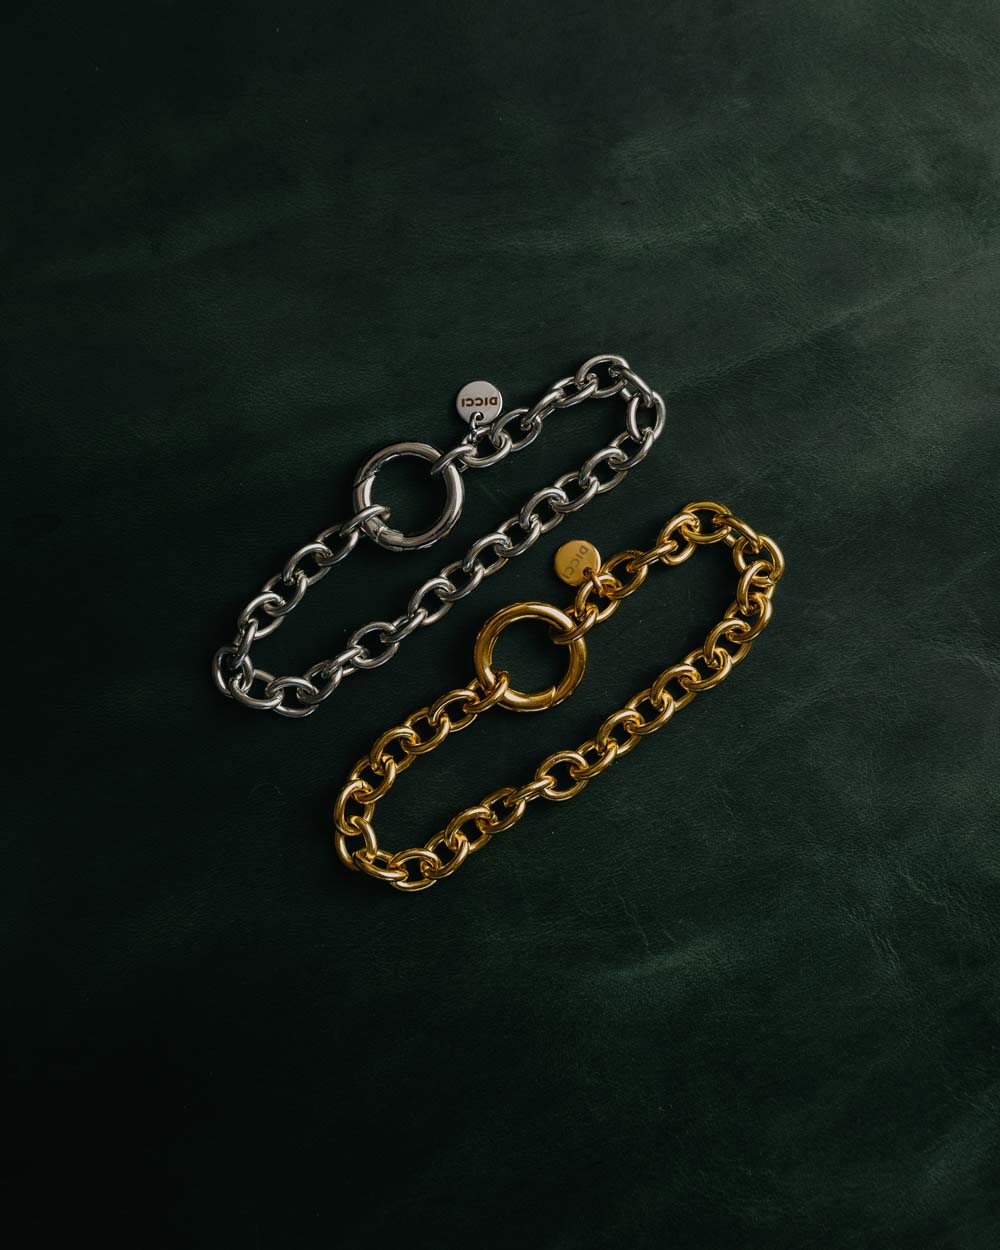 Pulseiras Ring - Pulseiras Prateada e Dourada 'Ring' em aço inoxidável - Joias Unissexo Online - Dicci